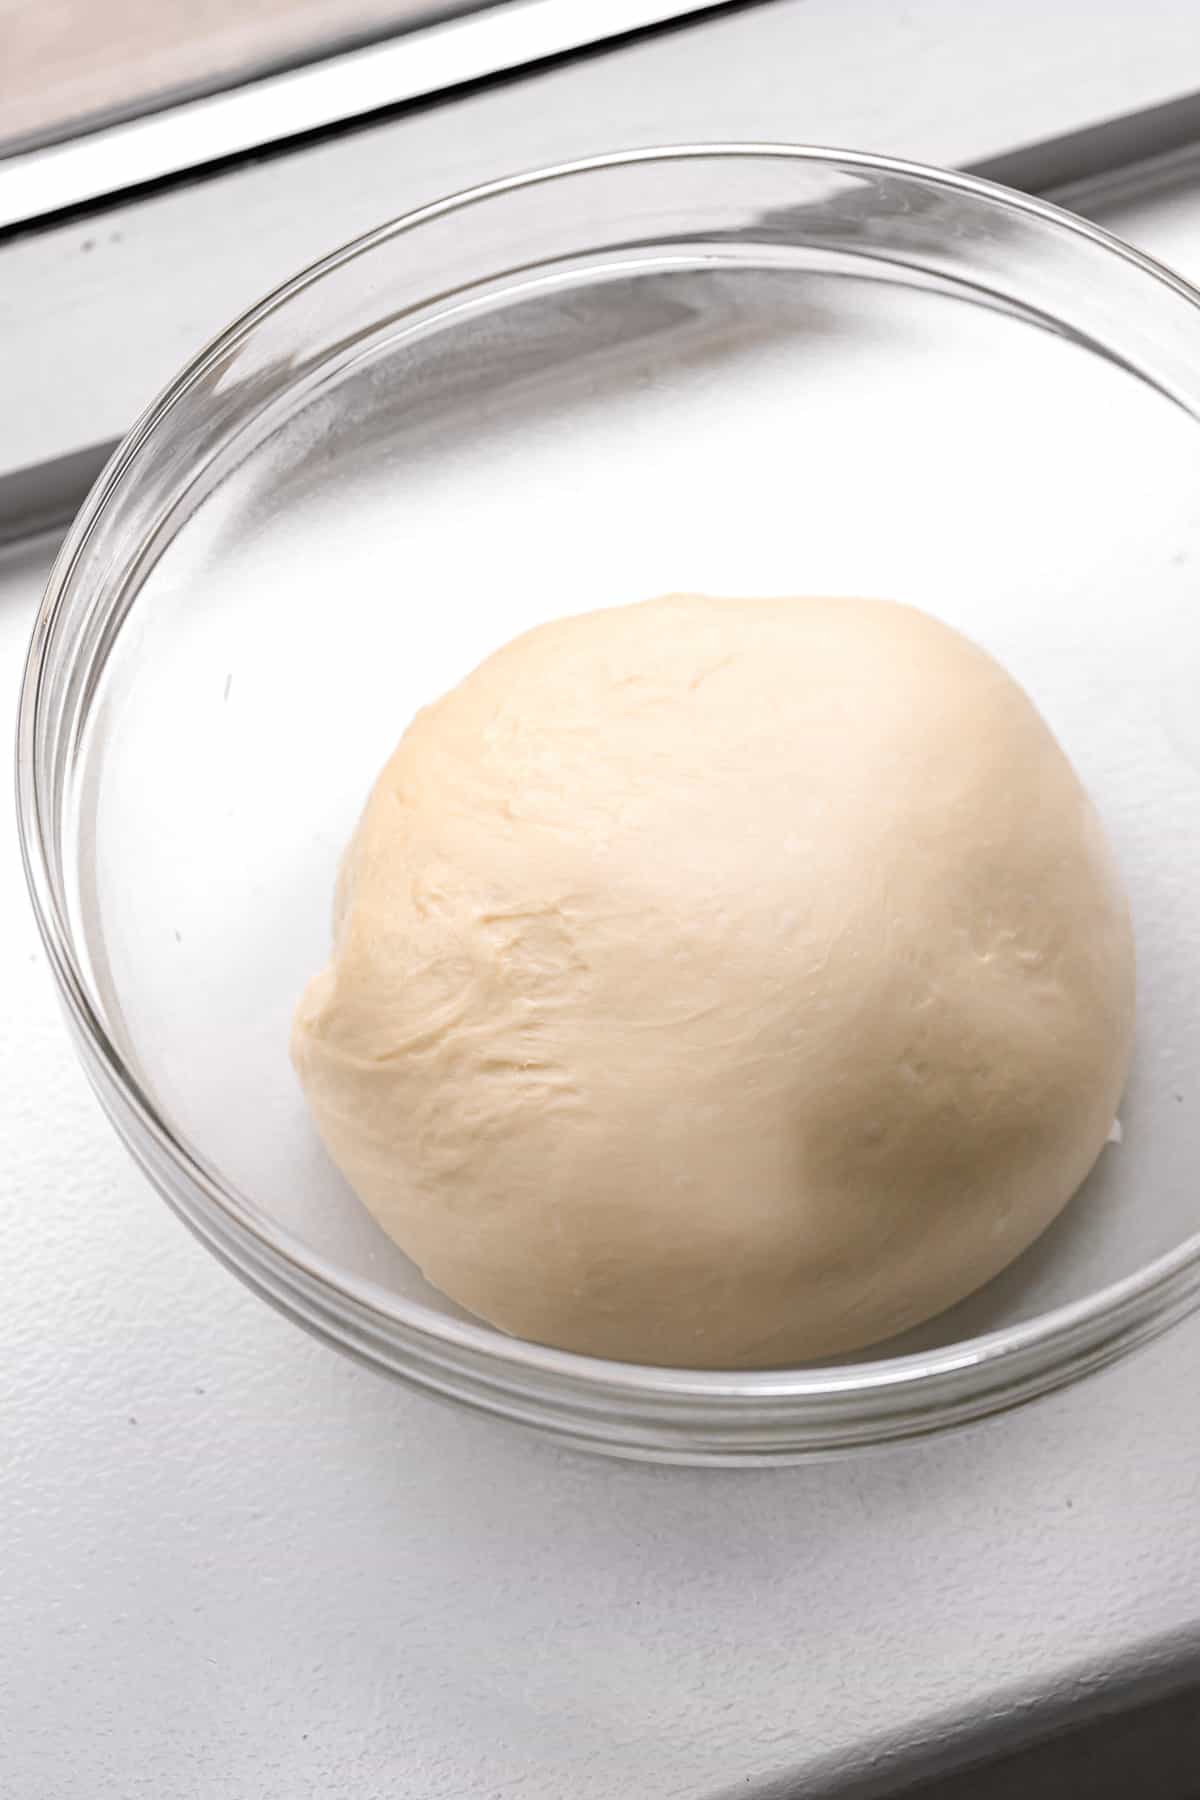 brioche dough in glass bowl .